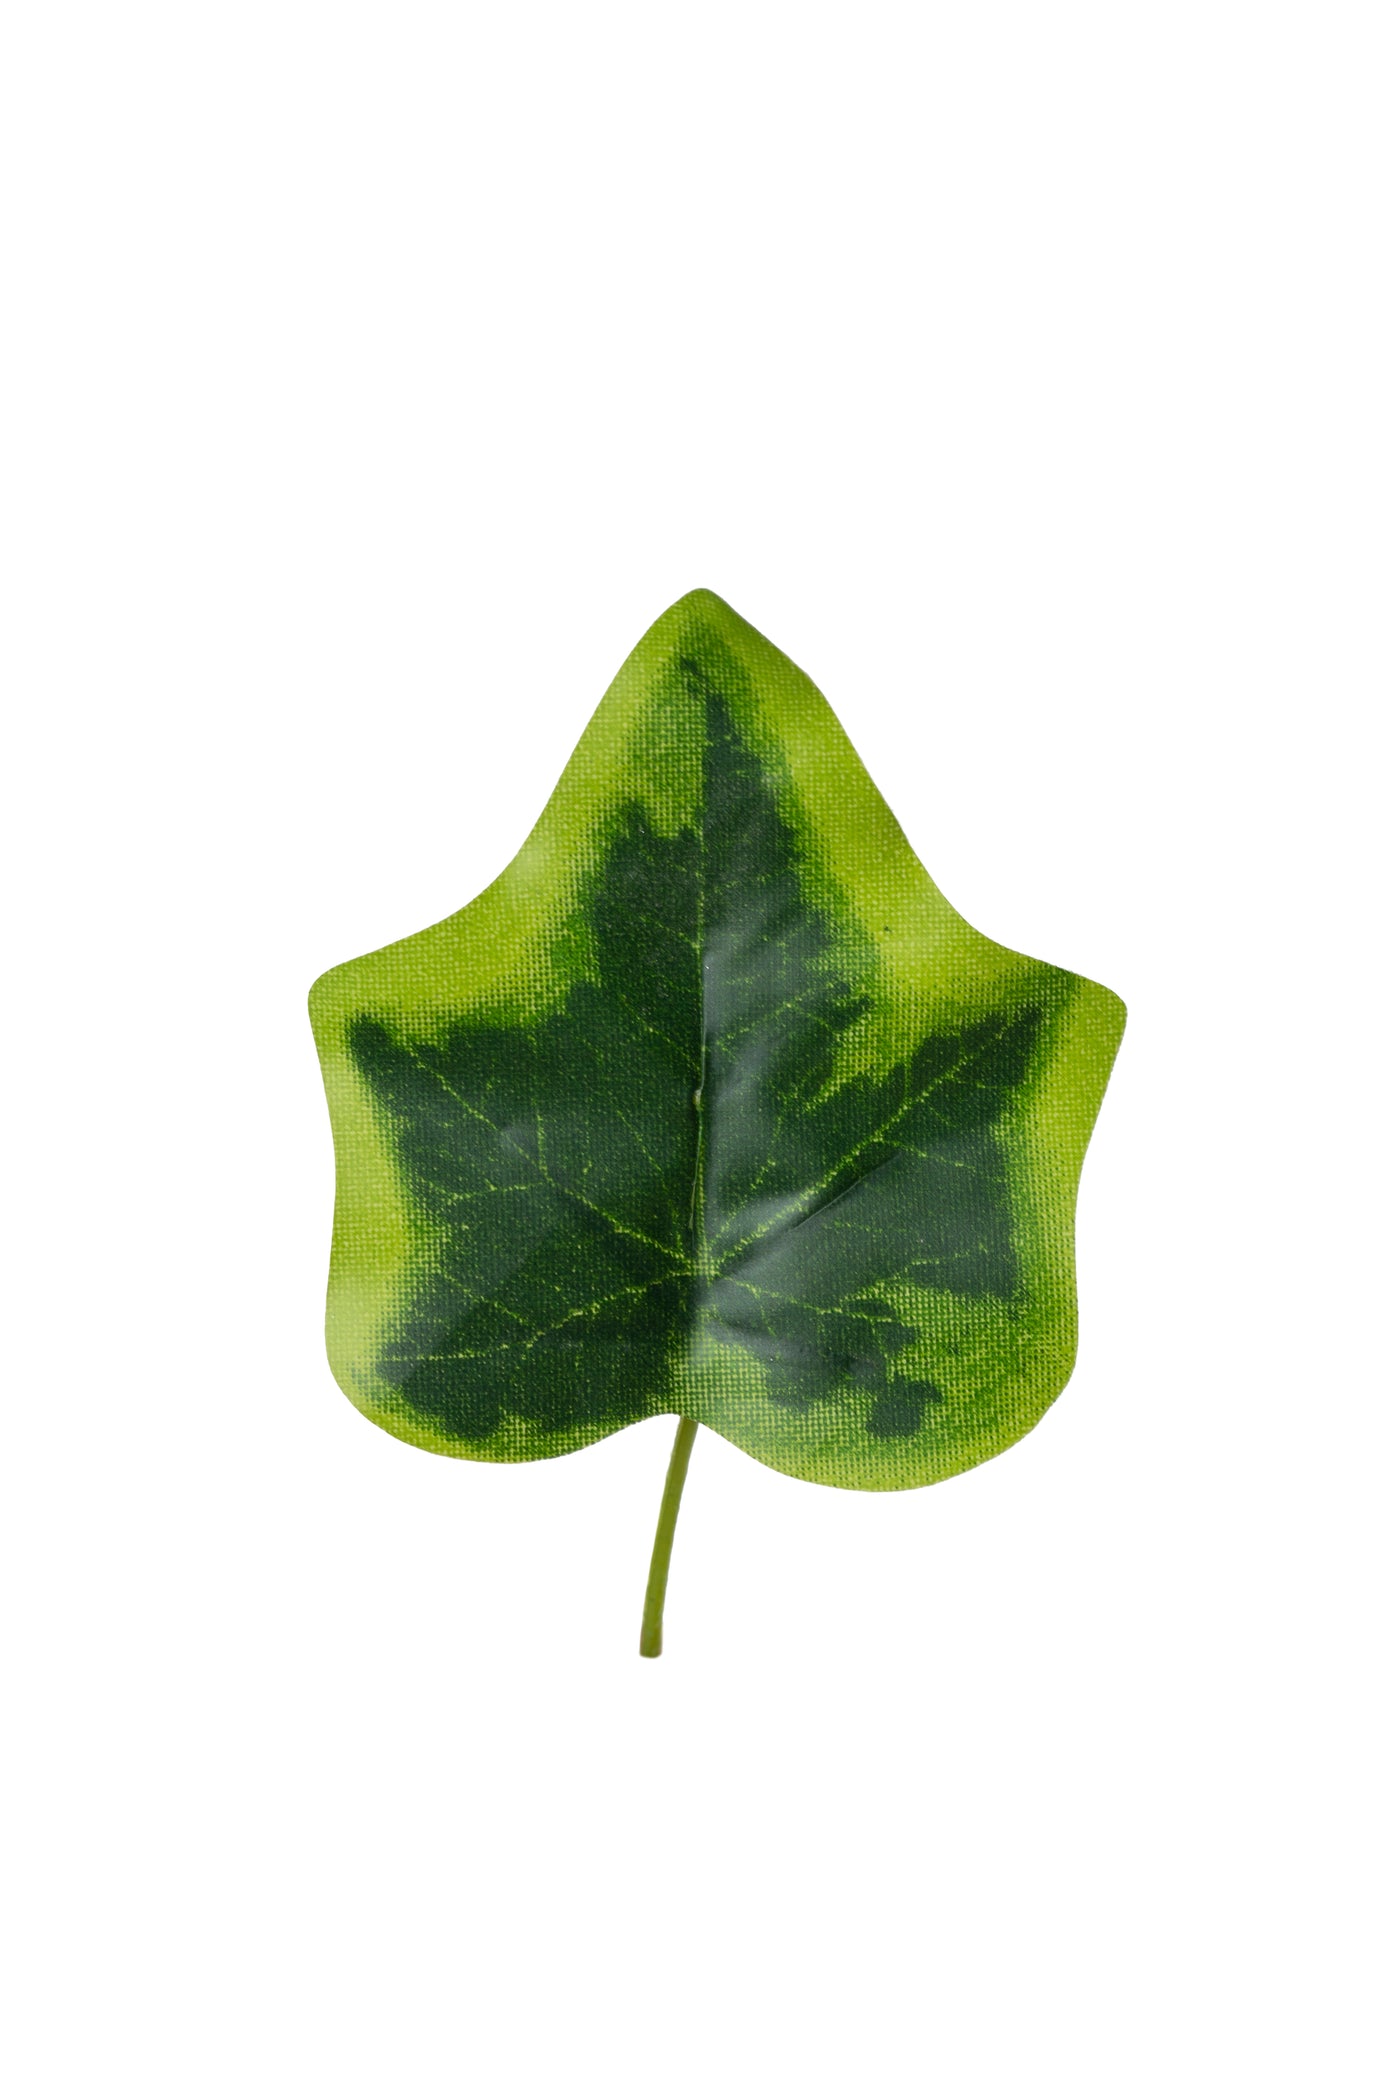 Iedera artificiala H160cm cu frunze verde cu galben pentru exterior cu protectie UV